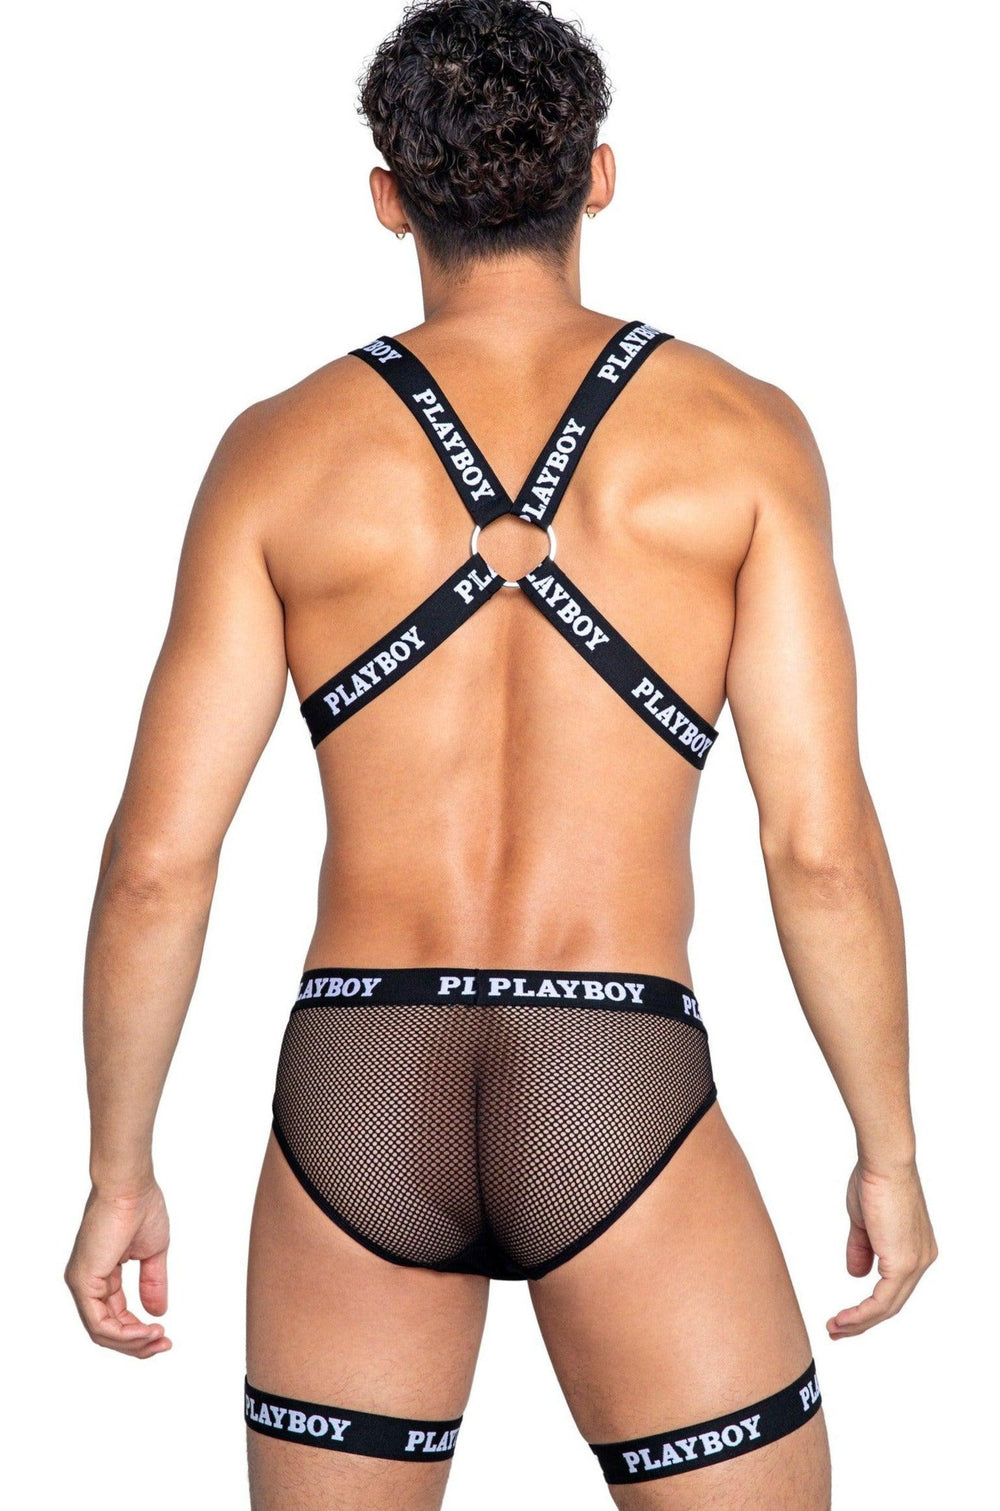 Playboy Mens Dark Room Harness - SEXYSHOES.COM